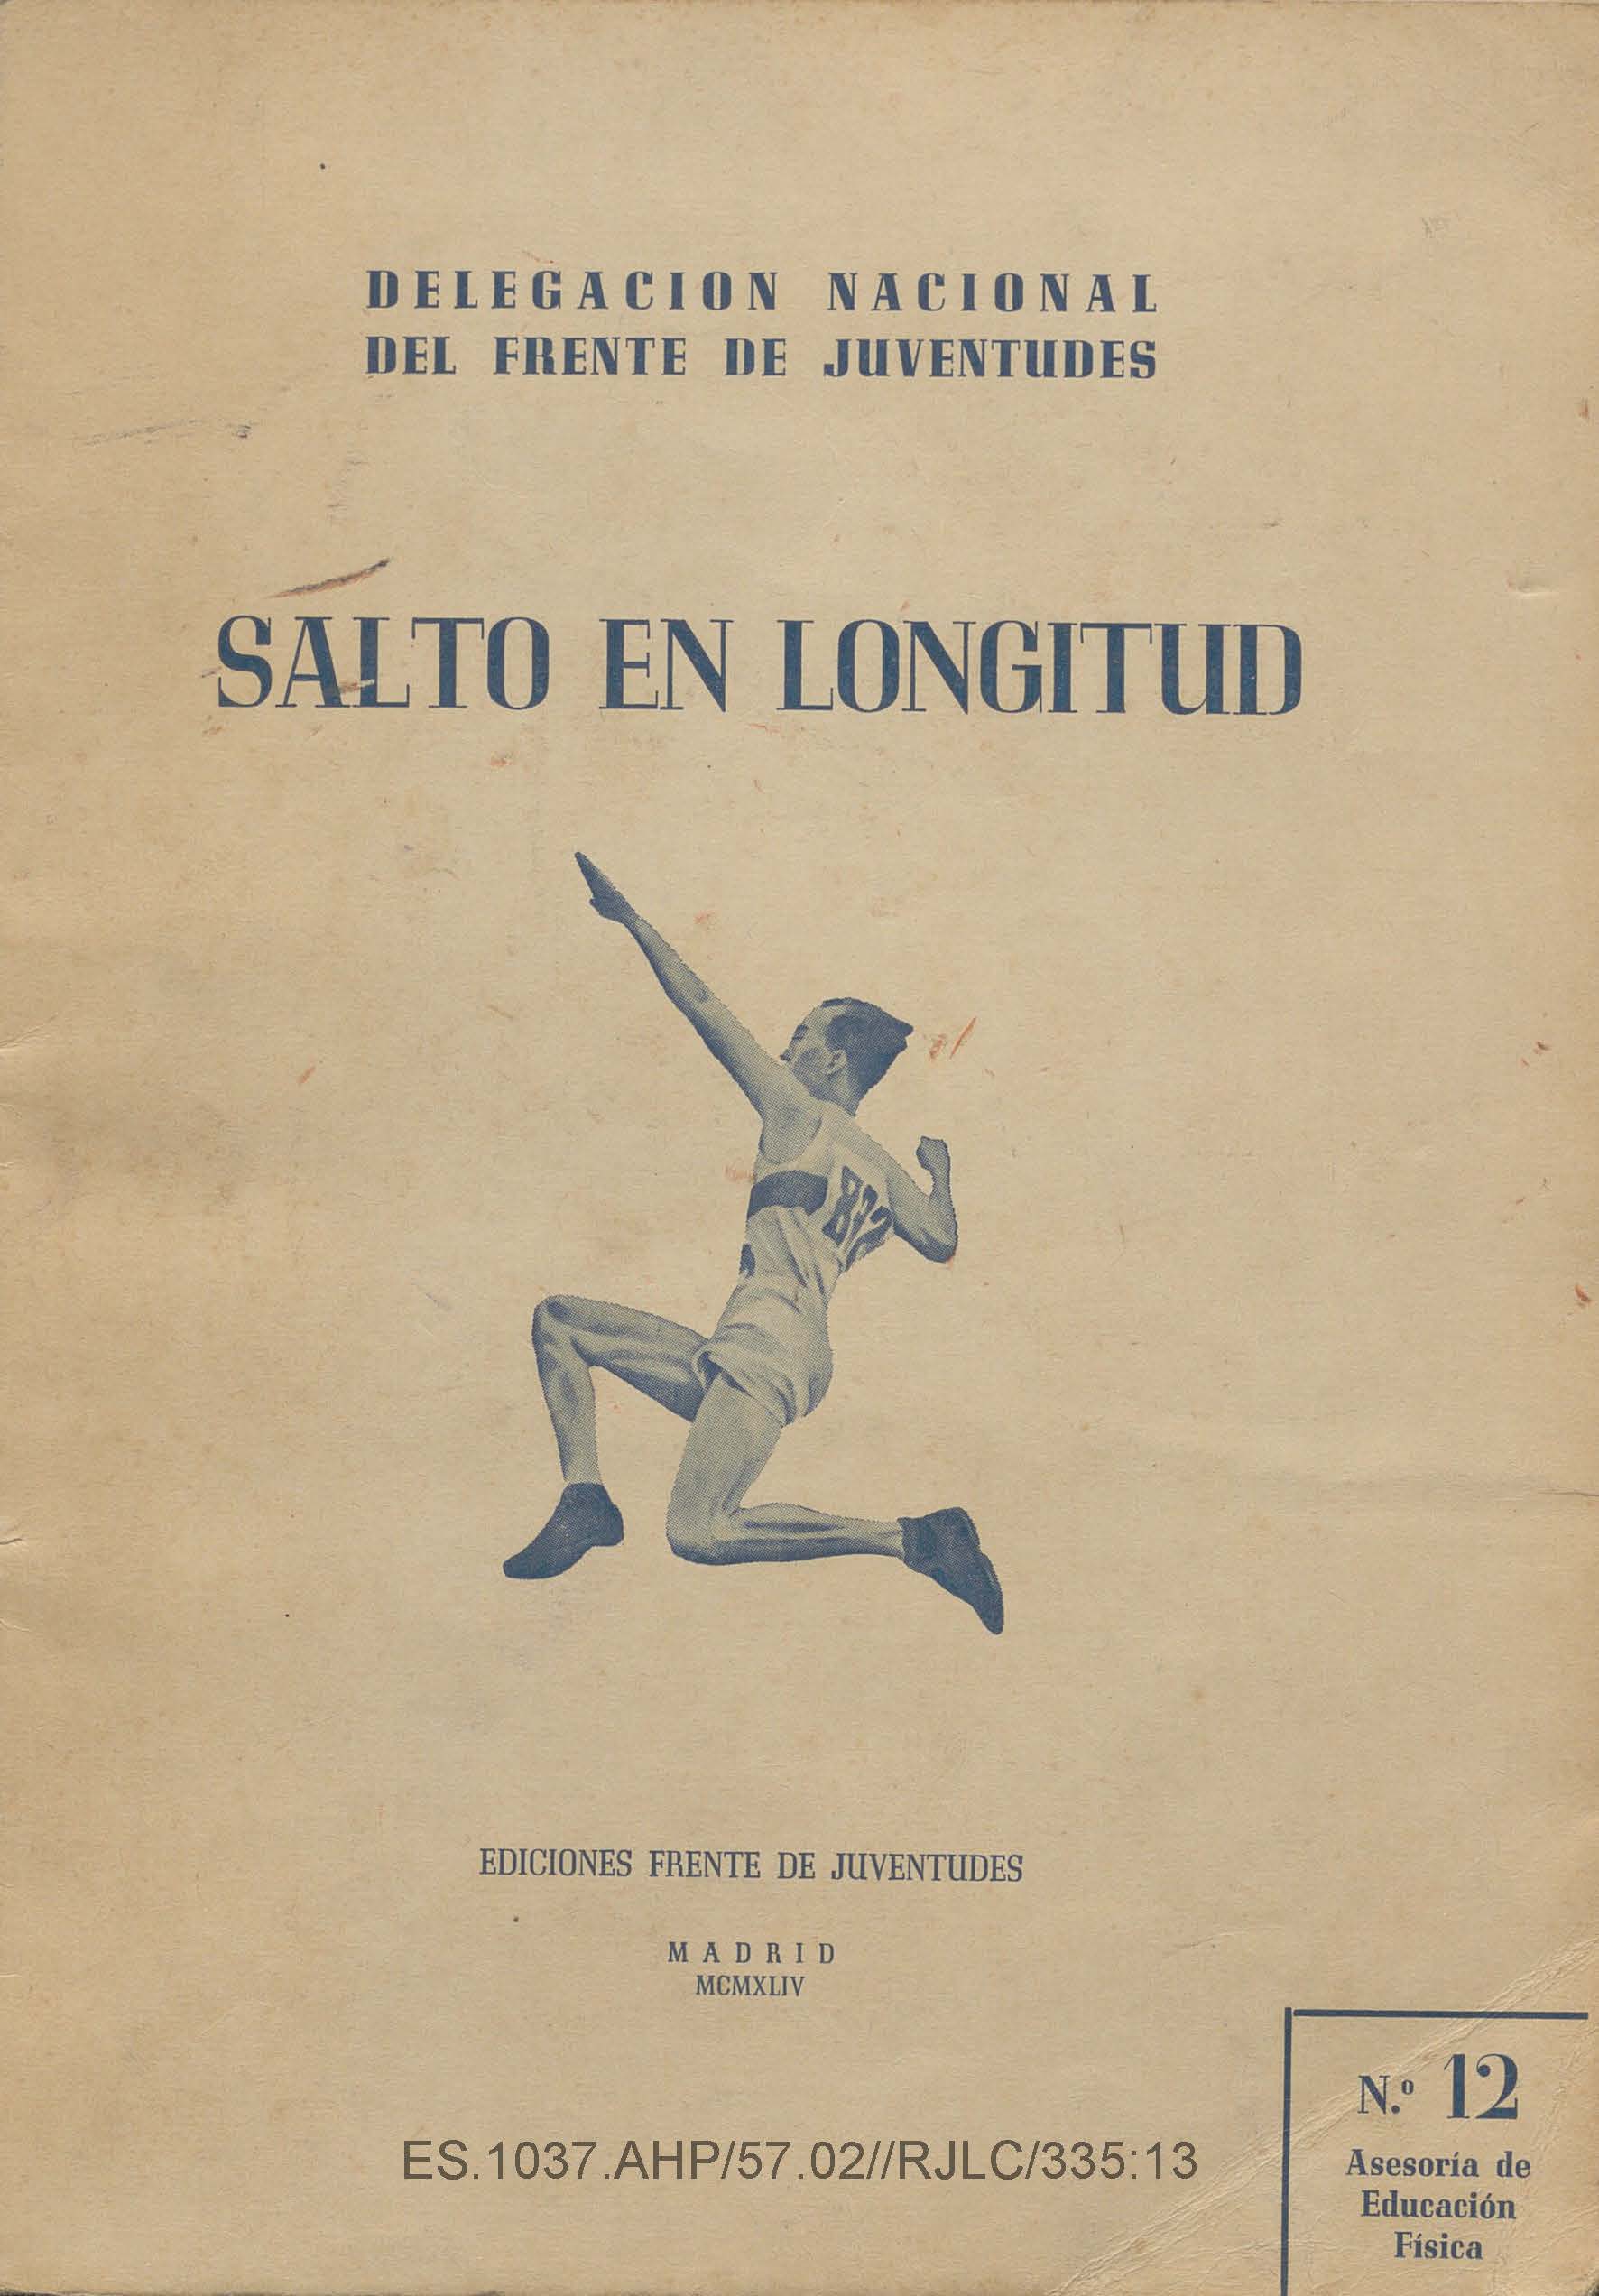 Image 2 of article El Archivo Histórico de Cáceres exhibe su rico patrimonio documental en una muestra sobre espectáculos deportivos